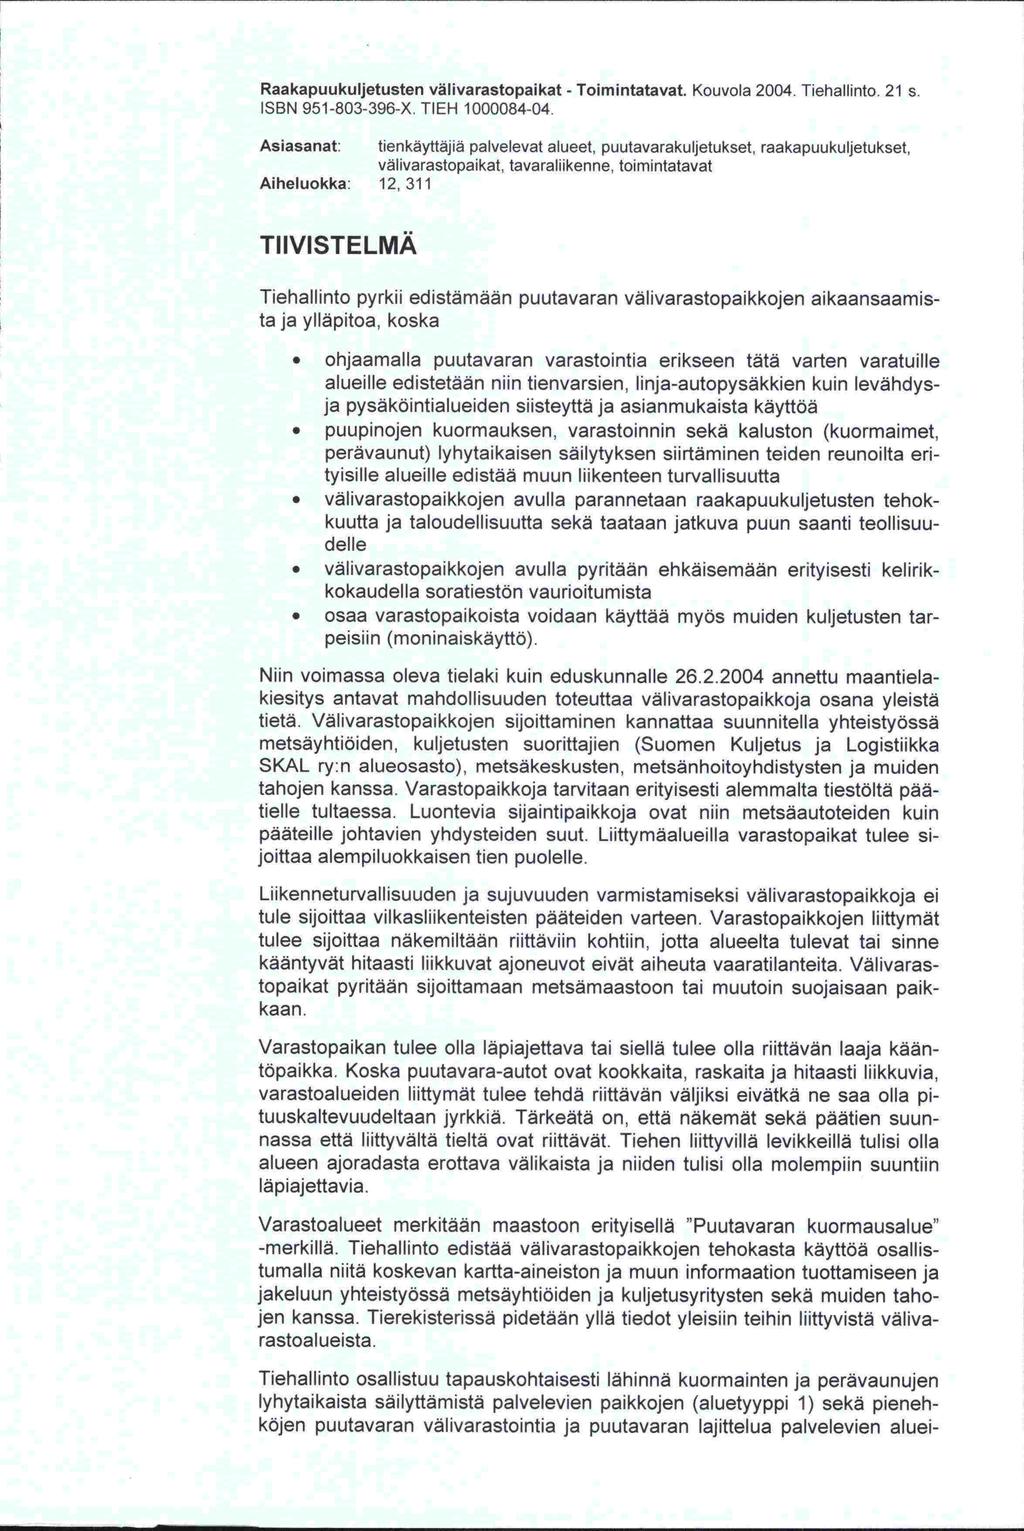 Raakapuukuljetusten välivarastopaikat -. Kouvola 2004. Tiehallinto. 21 s. ISBN 951-803-396-X. TIEH 1000084-04.